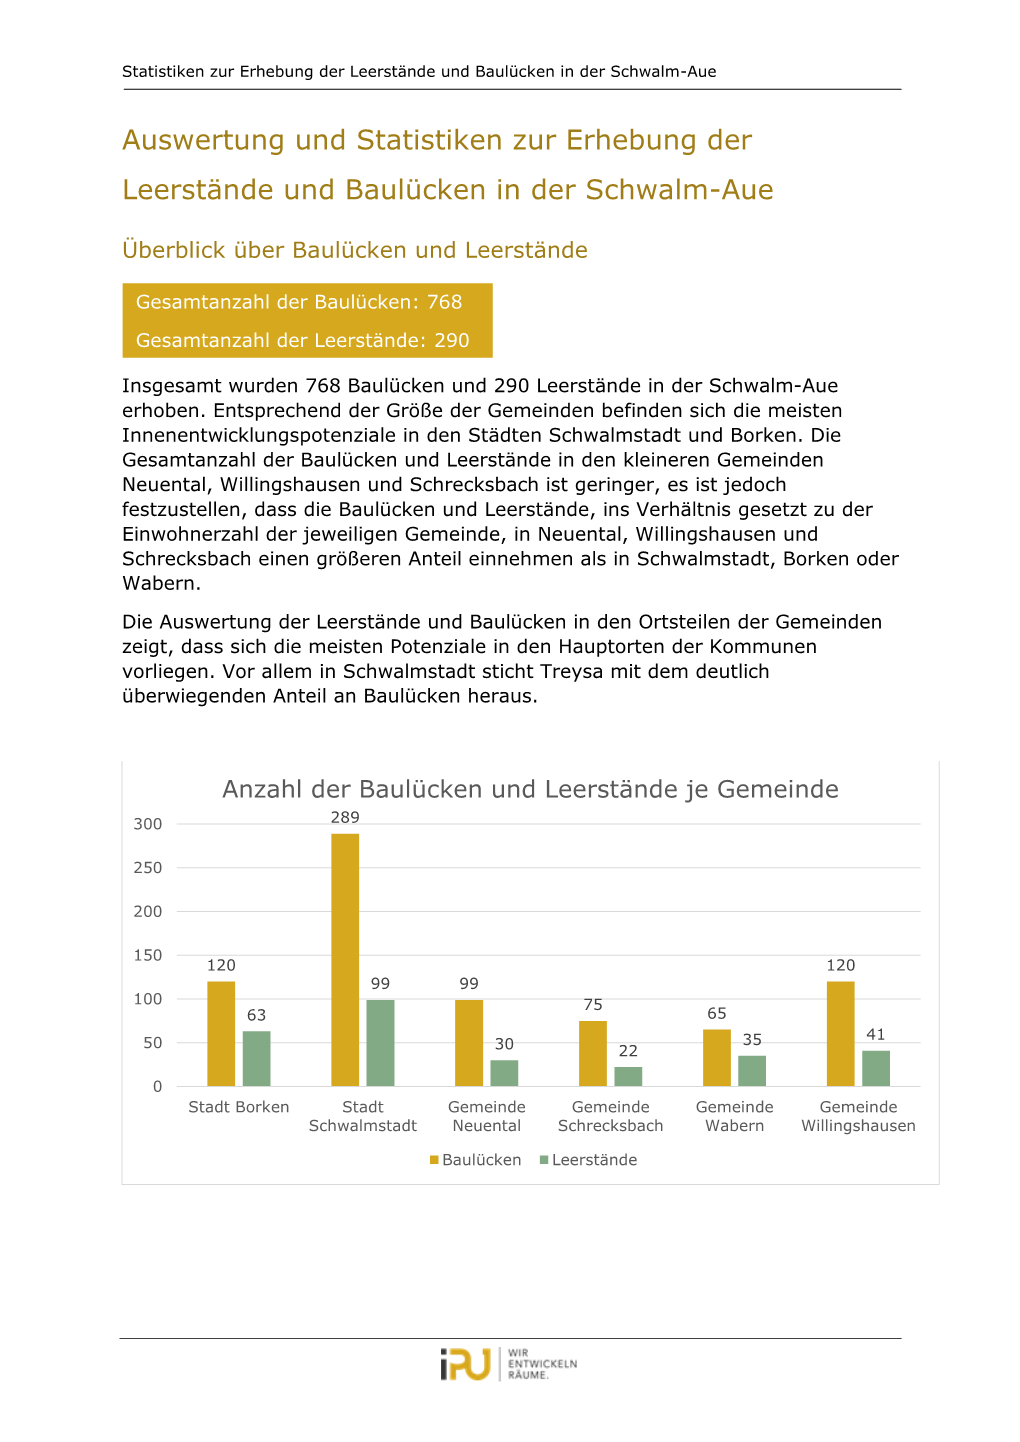 Auswertung Und Statistiken Zur Erhebung Der Leerstände Und Baulücken in Der Schwalm-Aue